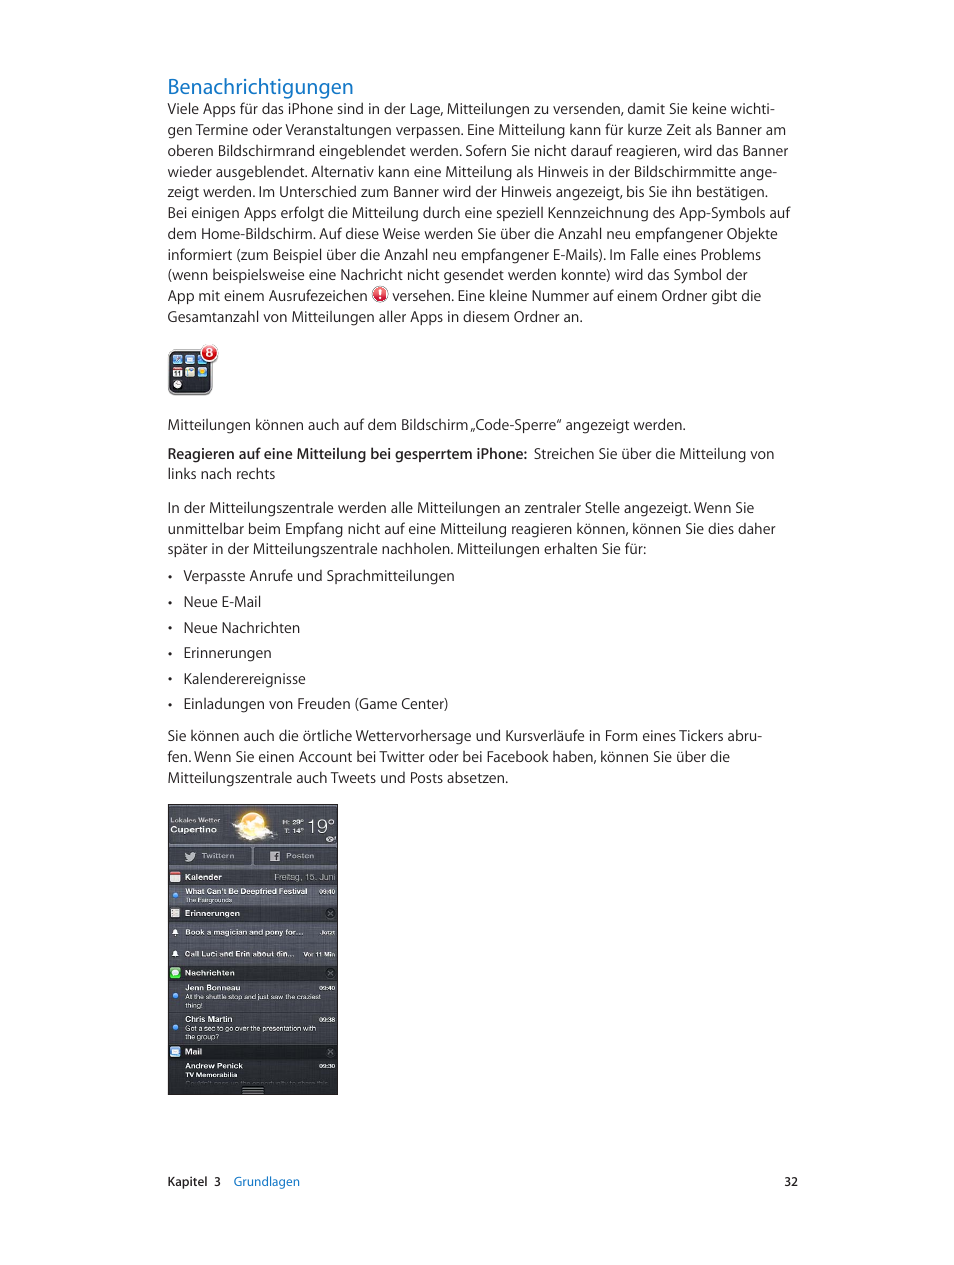 Benachrichtigungen, 32 benachrichtigungen | Apple iPhone iOS 6.1 Benutzerhandbuch | Seite 32 / 178